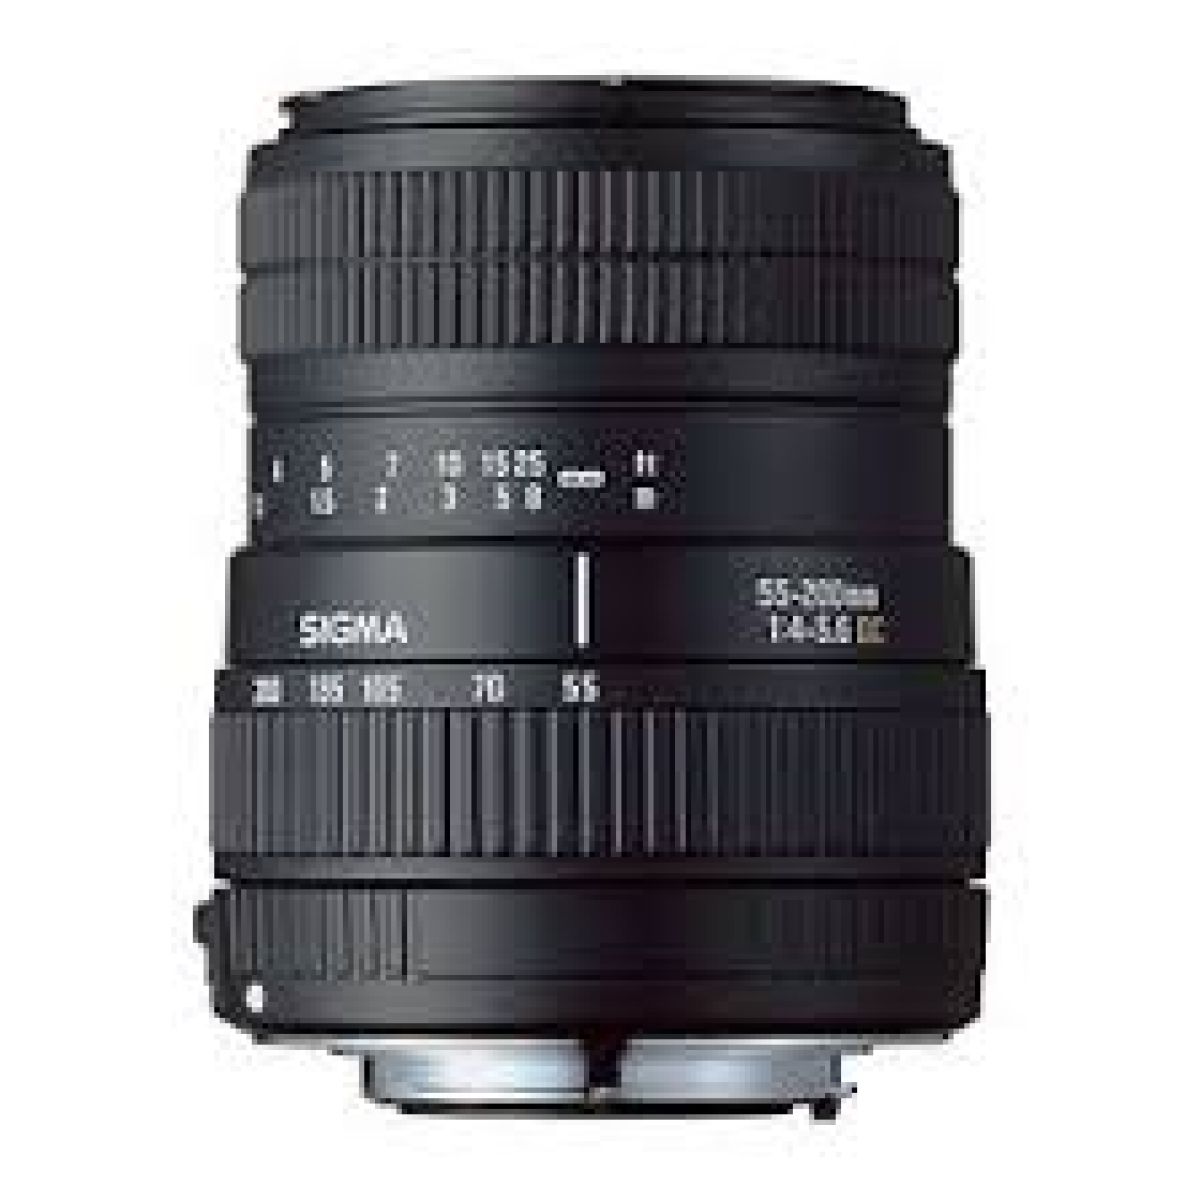 Sigma 55-200MM 1:4-5.6 DC Téléobjectif pour Canon Reflex